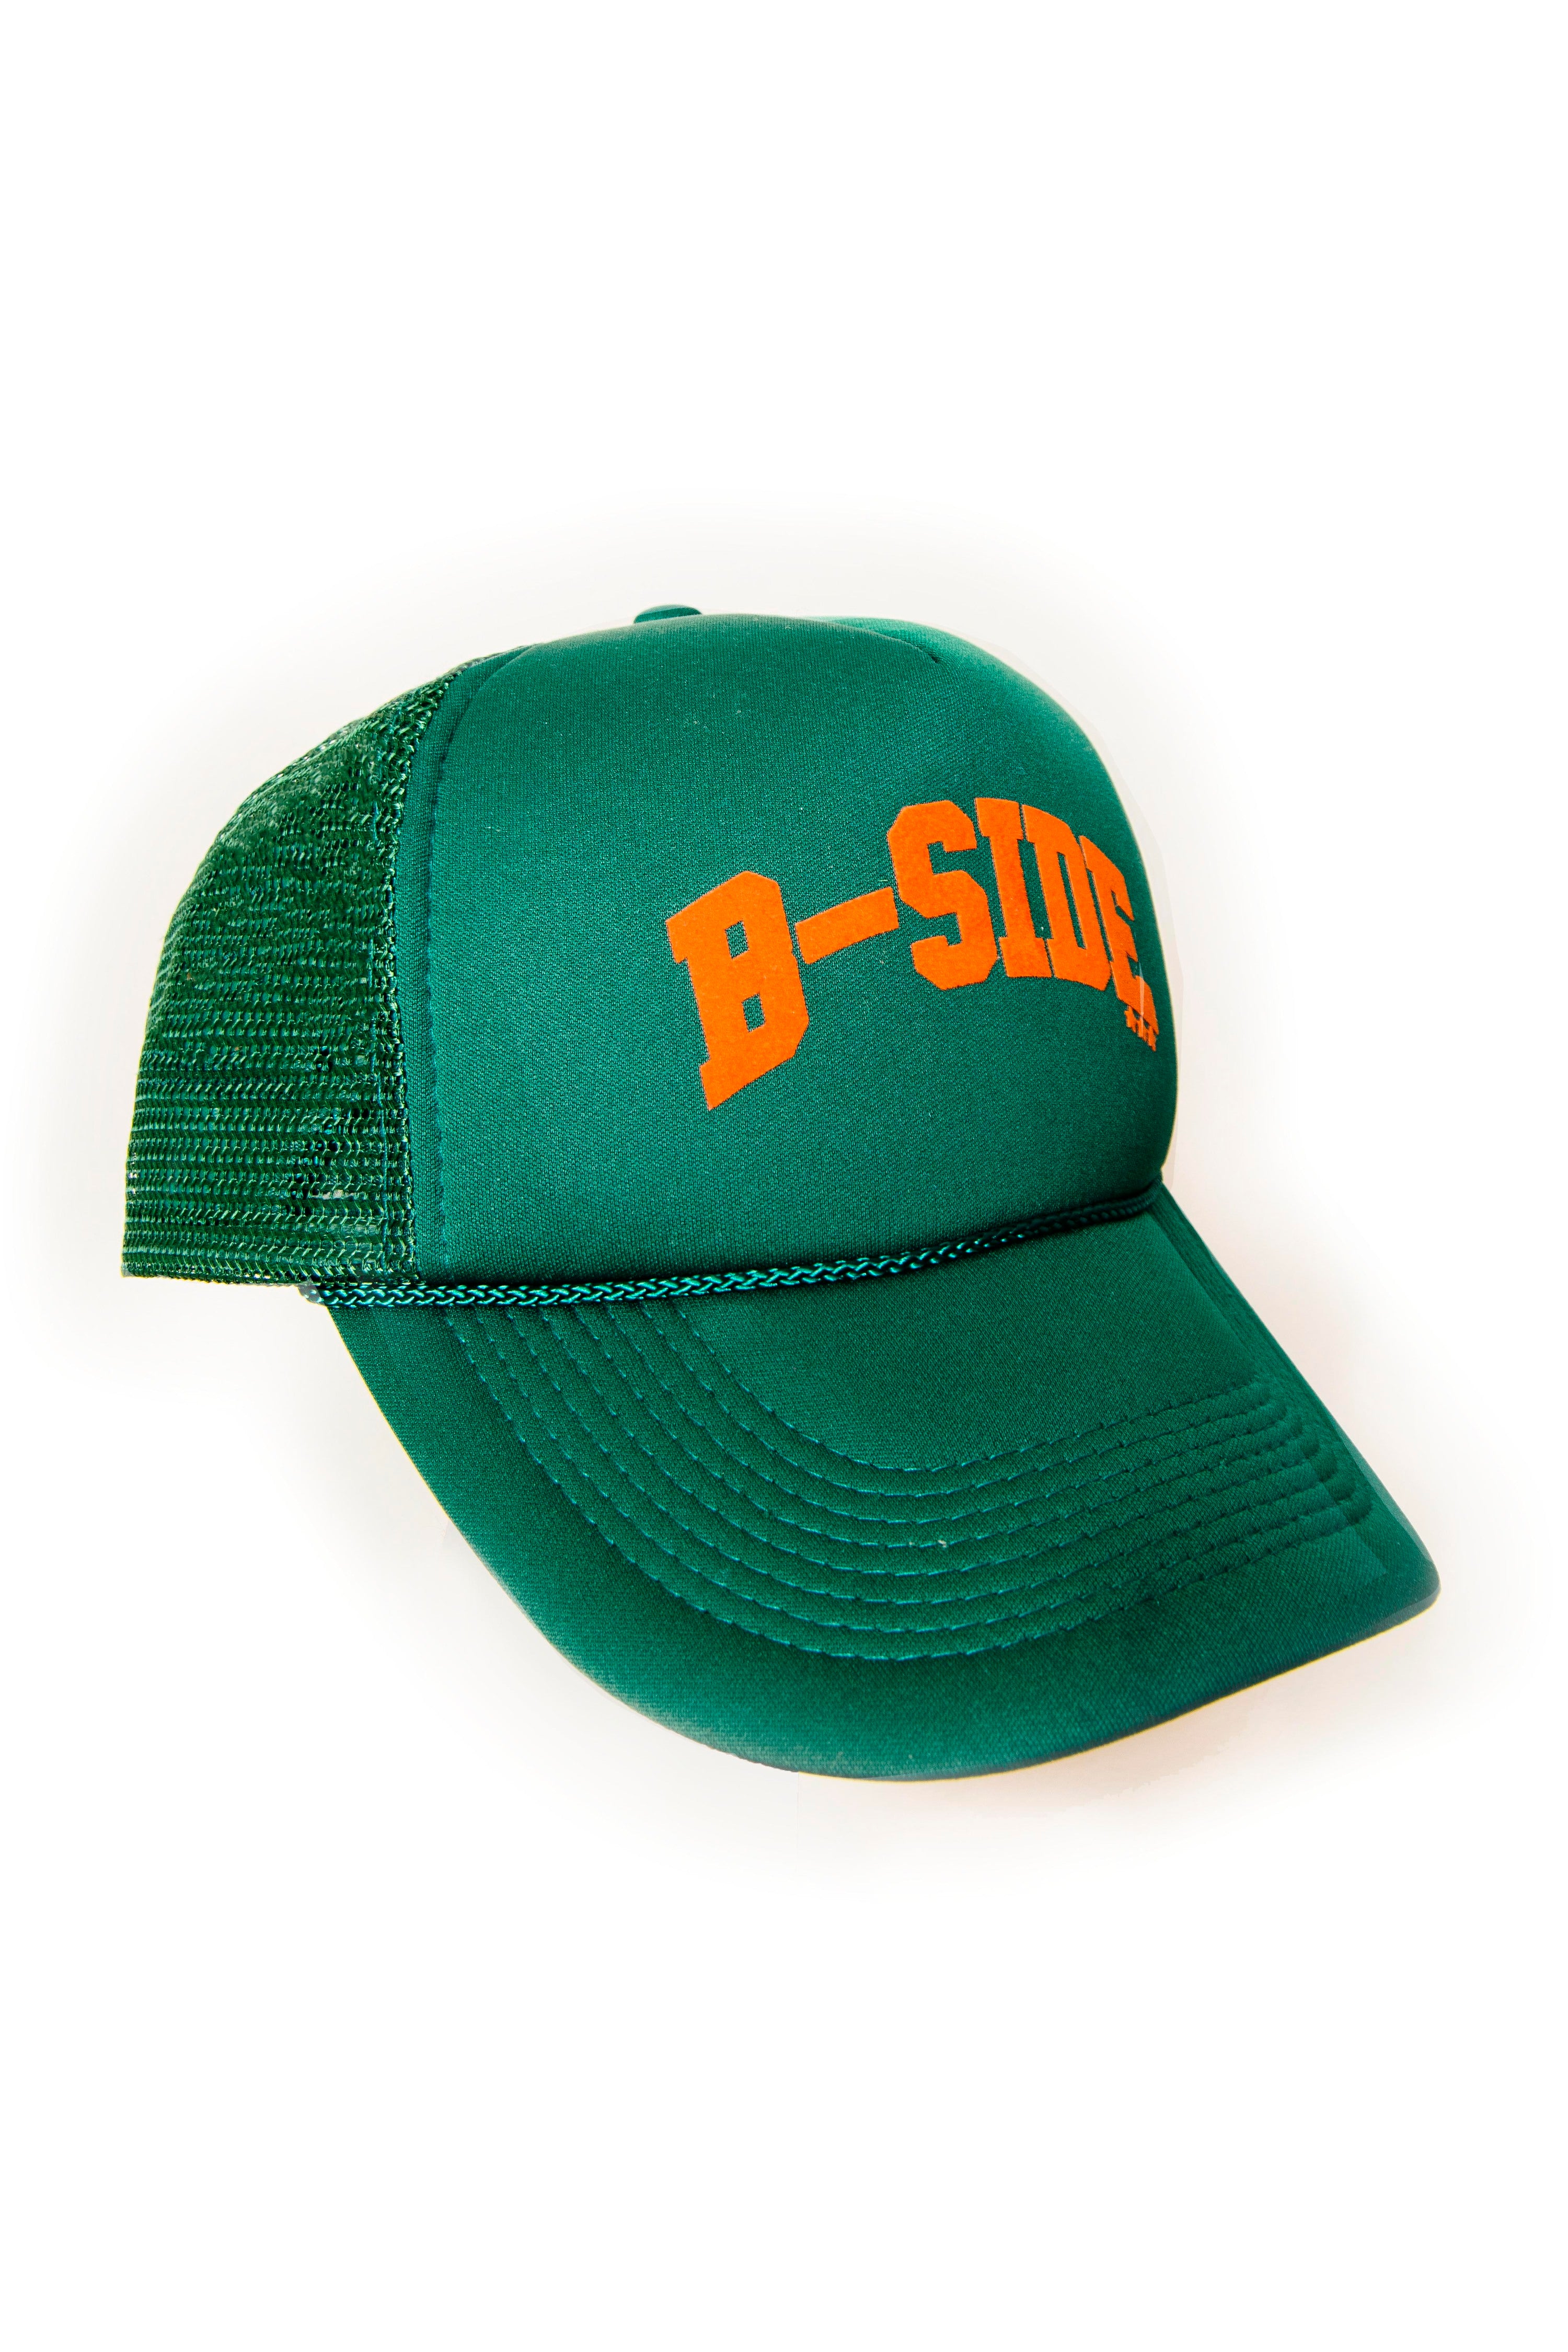 B-star Trucker Hat